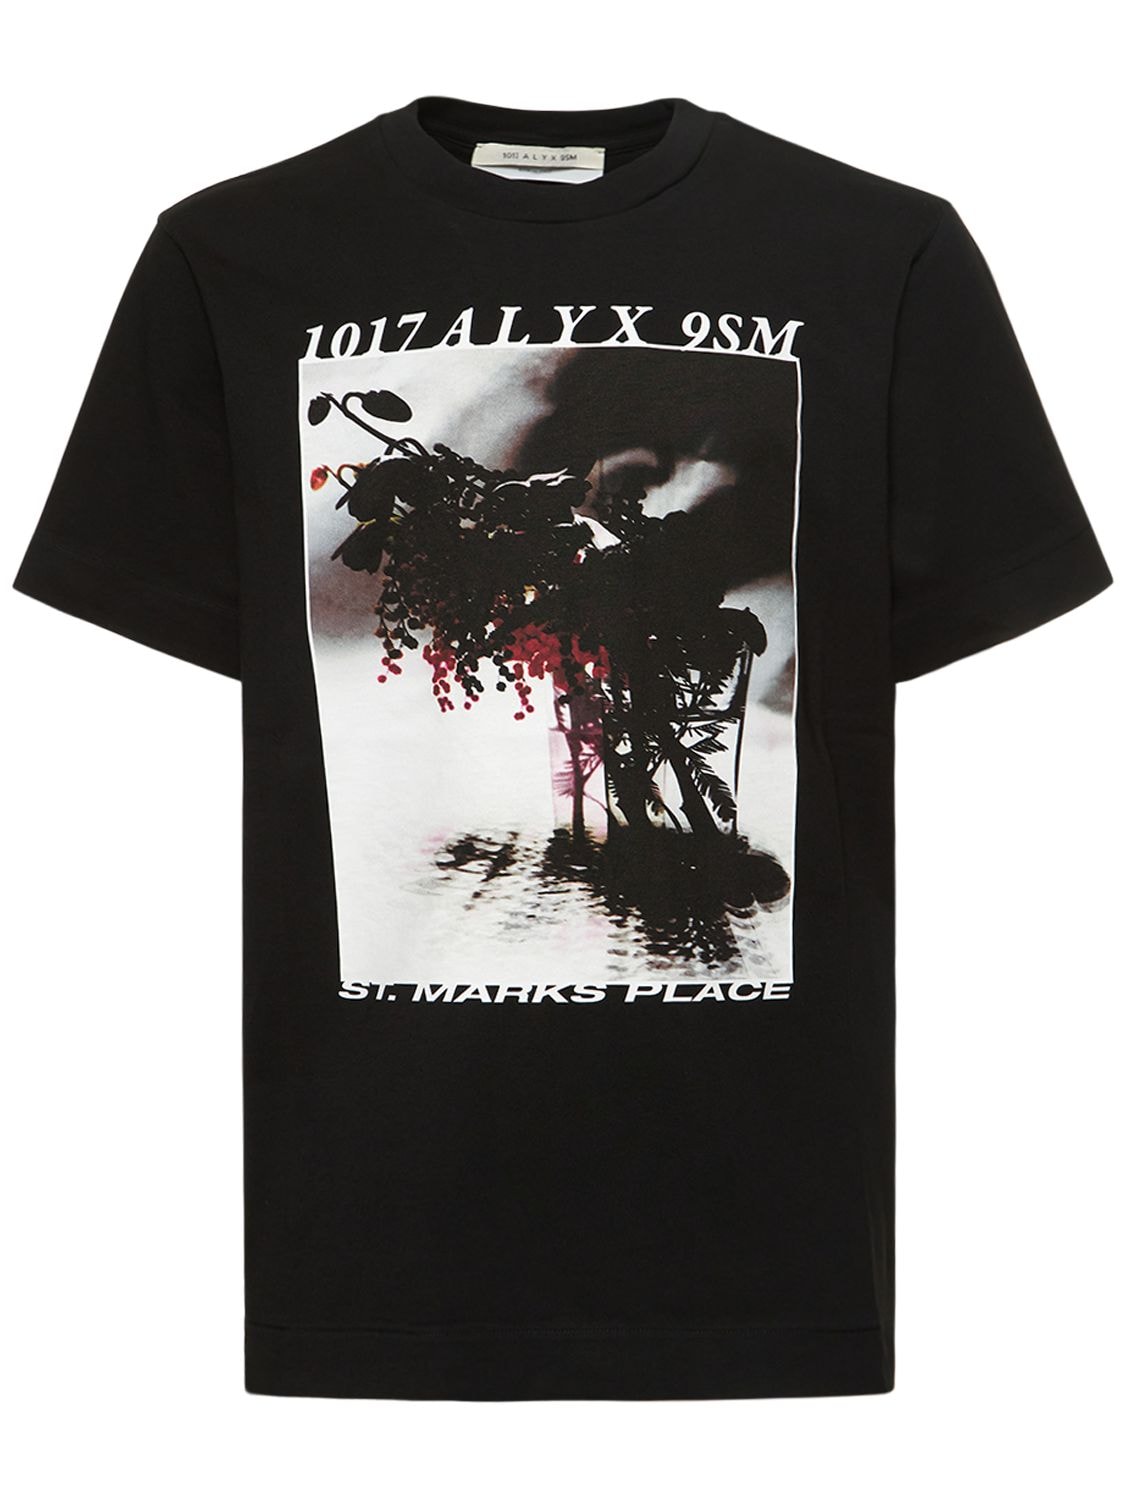 T-shirt En Coton Imprimé St. Marks Place - 1017 ALYX 9SM - Modalova